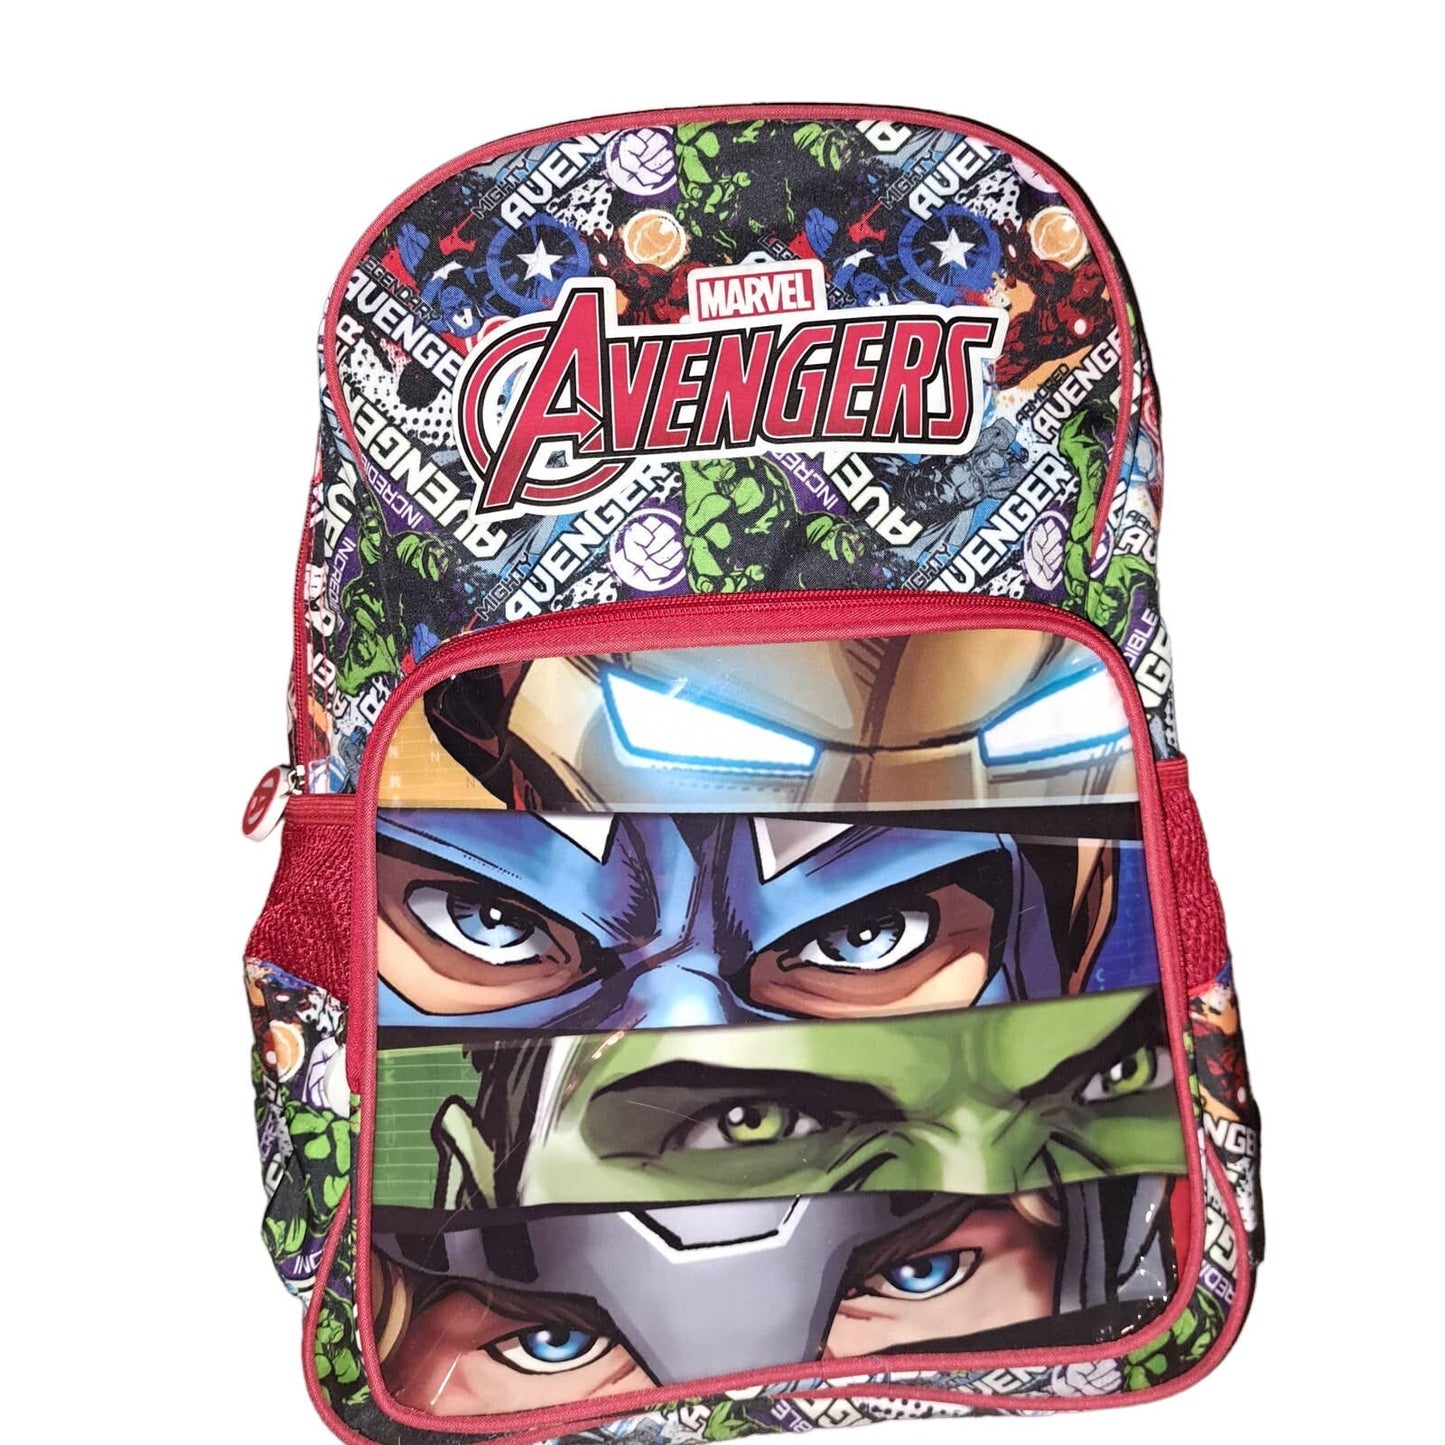 SALE!!! NWT - MARVEL Avengers full size Backpack